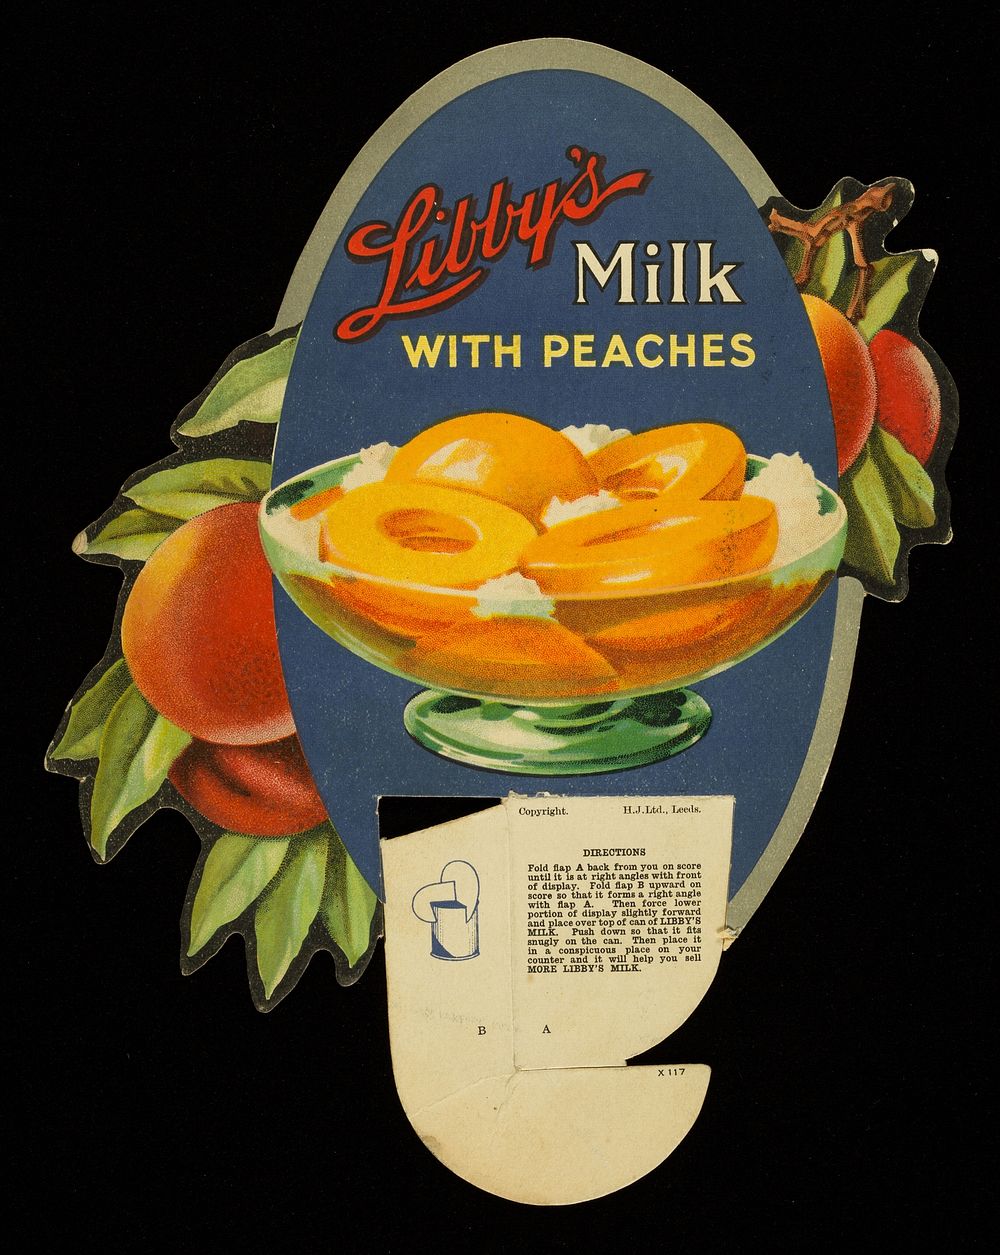 Libby's milk with peaches / H.J. Ltd.